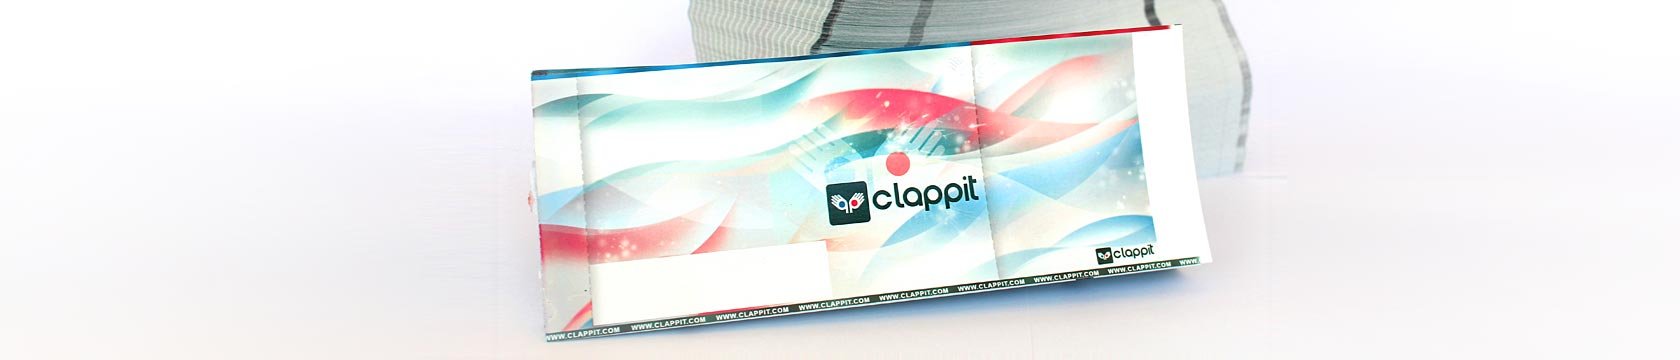 Clappit-Full-Ticketing-Pagamenti-Vendita-Biglietti-Eventi-Spettacoli